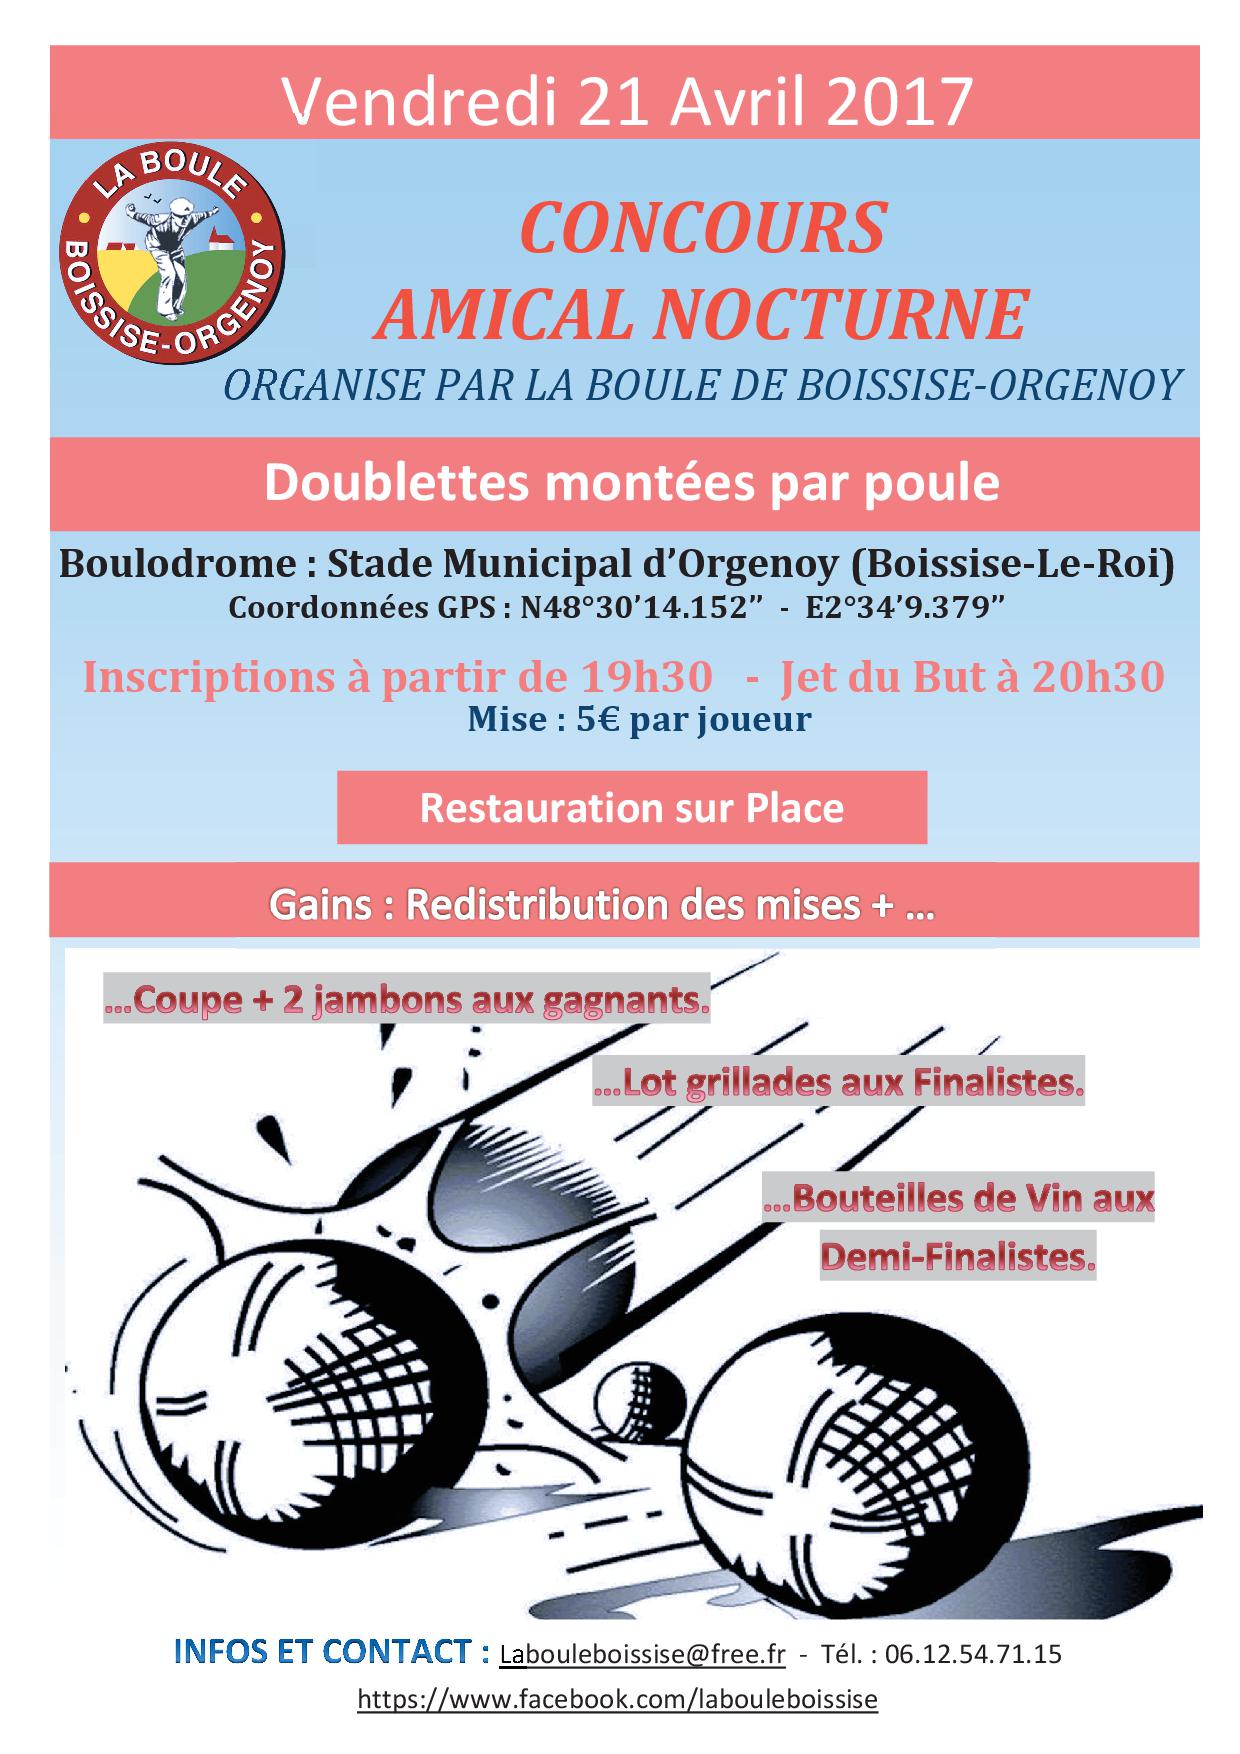 Concours Amical Nocturne - Evènement du club de pétanque La Boule de Boissise-Orgenoy